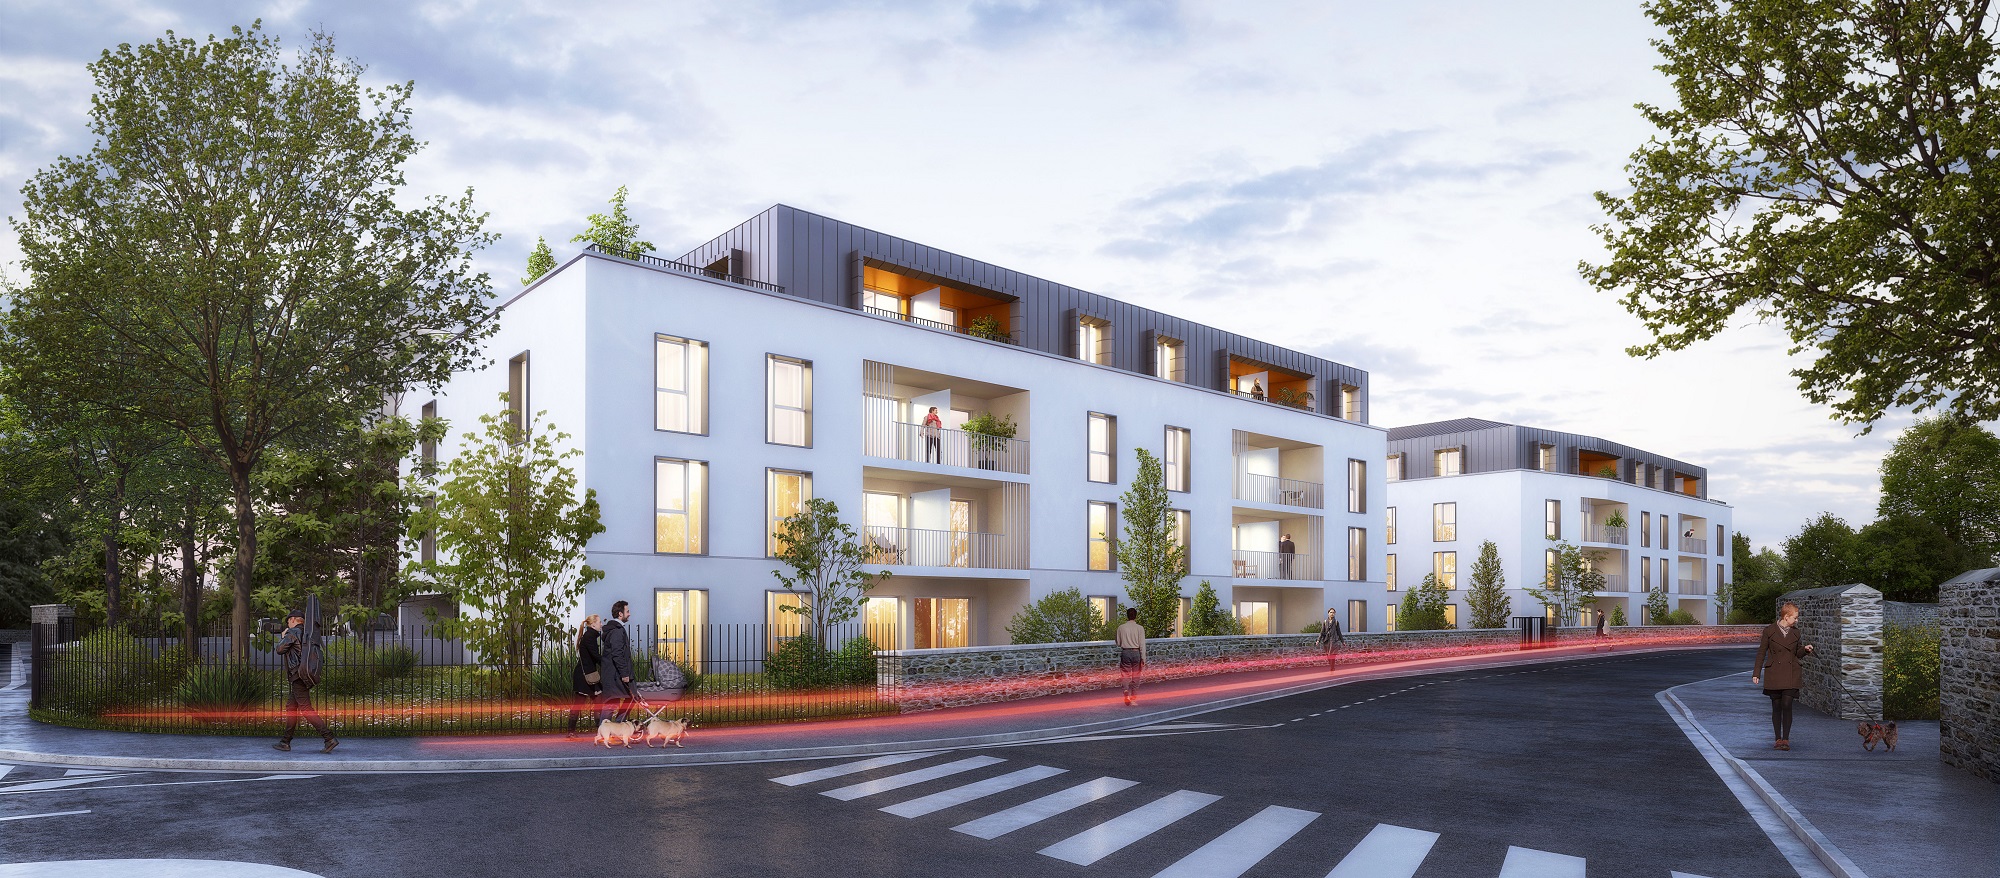 L-2018-06 - REALITES - Construction de 62 Logements quartier CHU - Angers (49) ©Rolland & associés1 petite